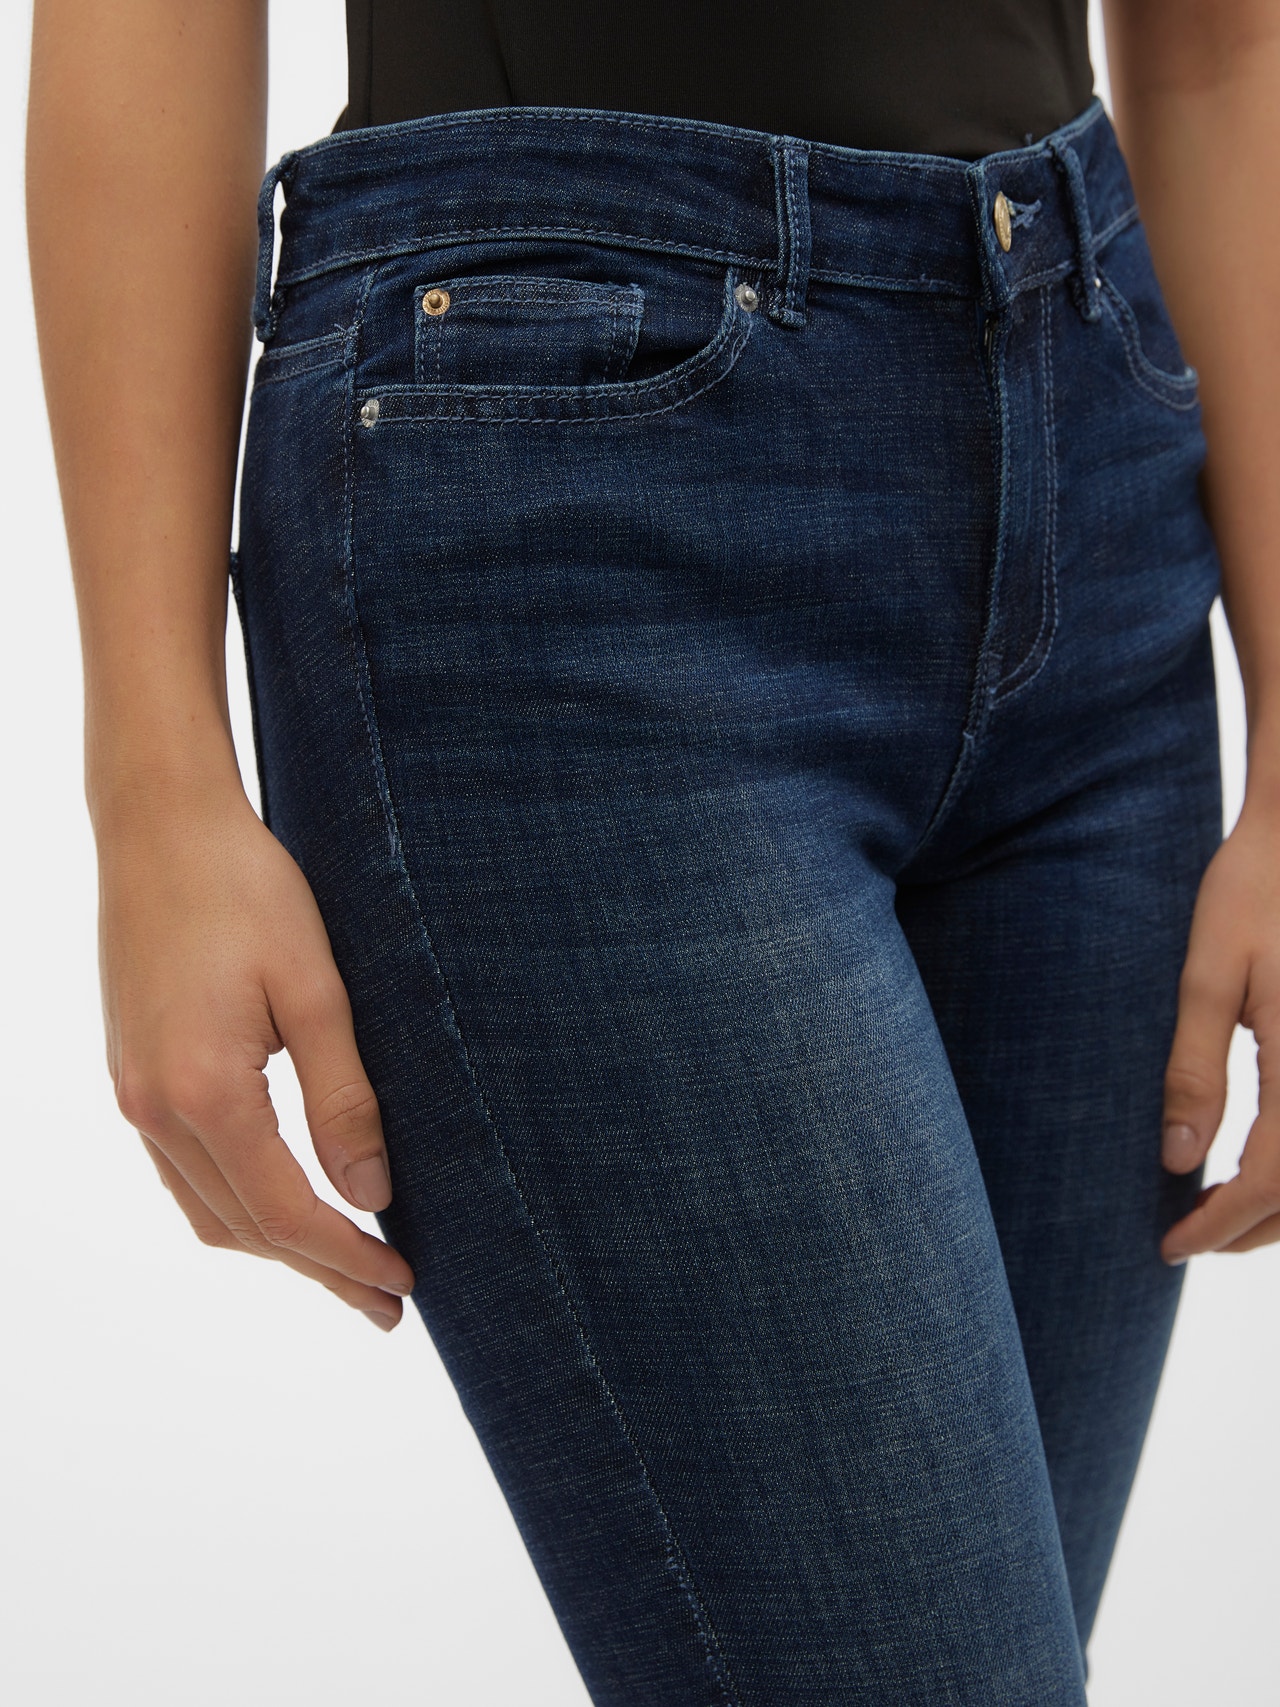 Vero Moda VMFLASH Skinny Fit Jeans -Dark Blue Denim - 10306876